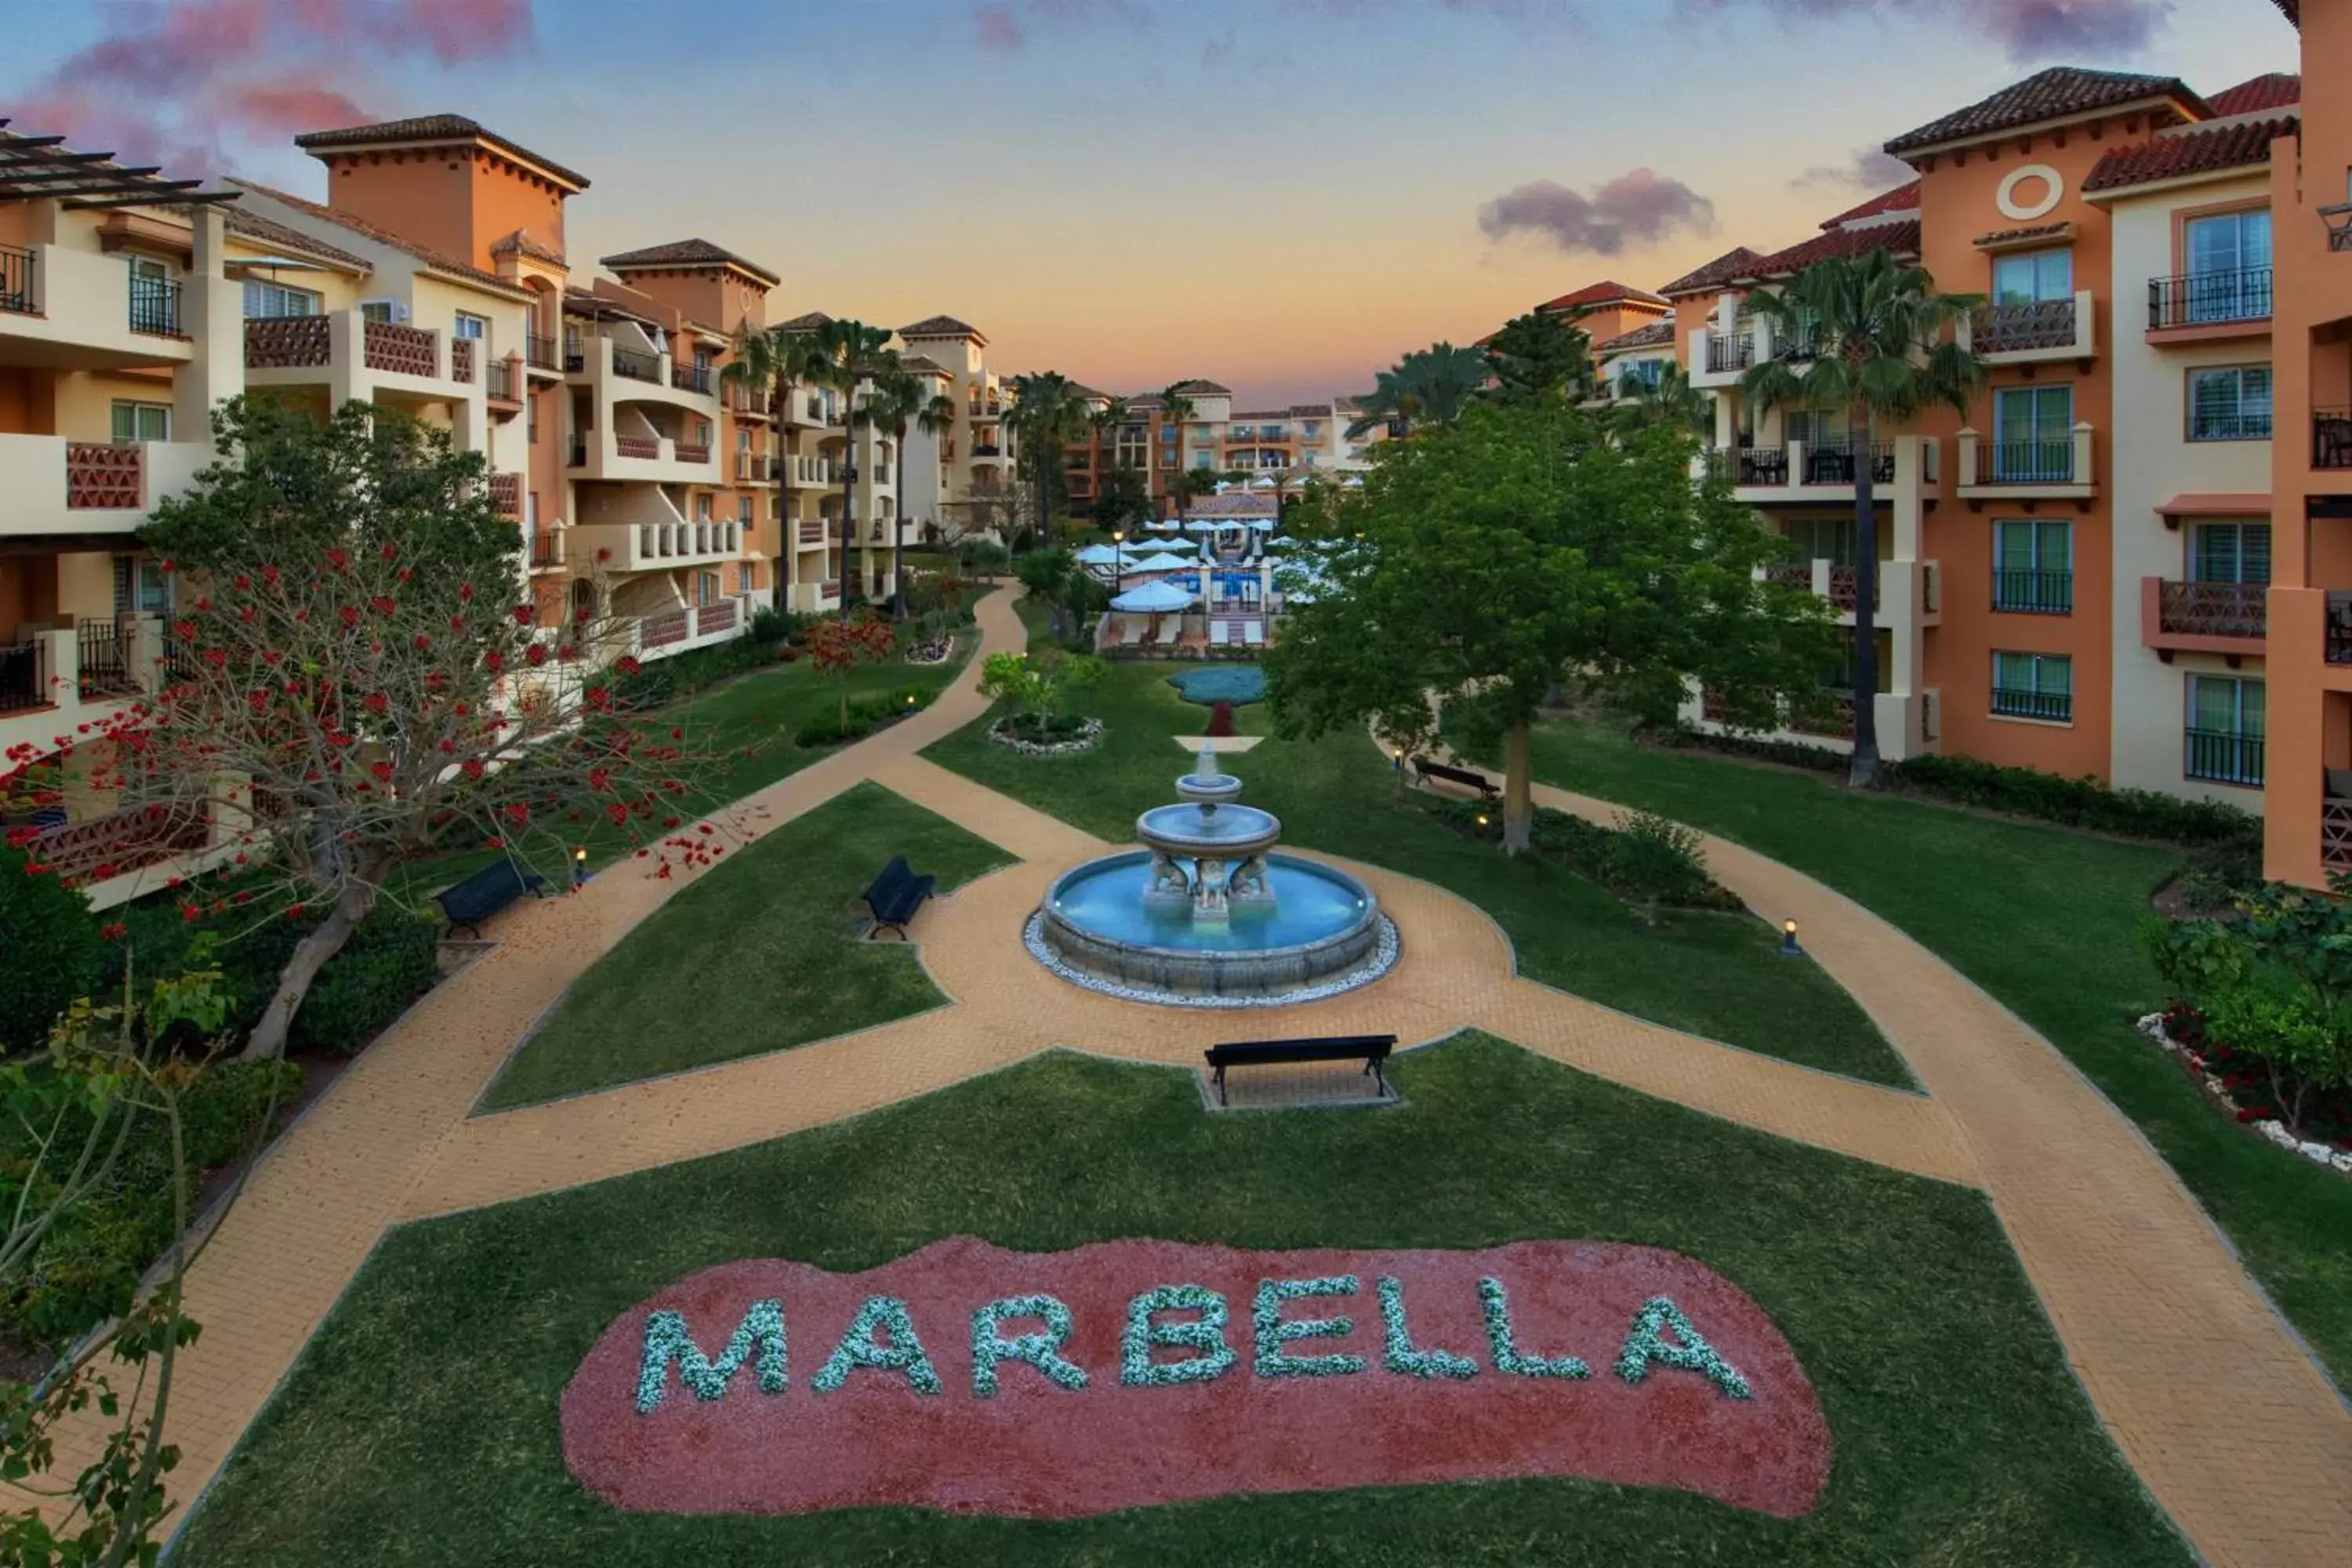 Property building in Marriott's Marbella Beach Resort